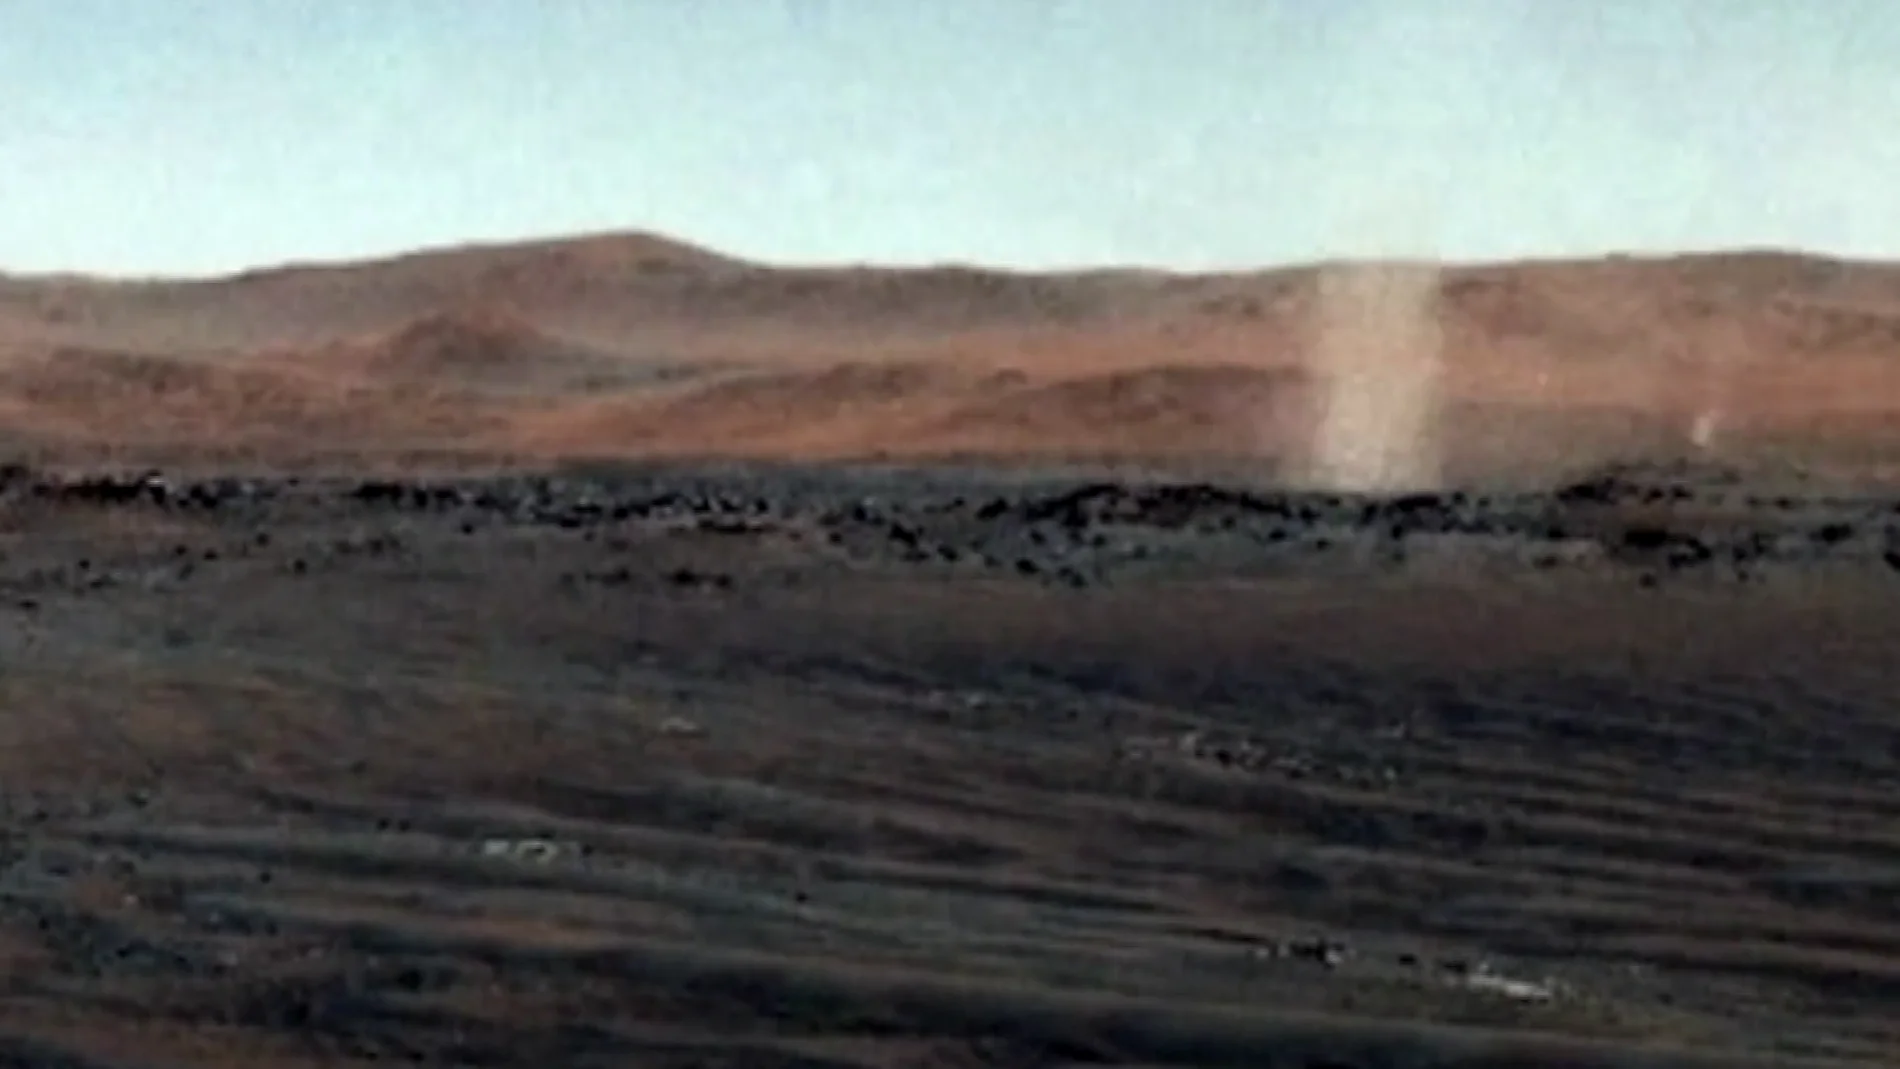 Imagen de Marte del rover Perserverance de la NASA